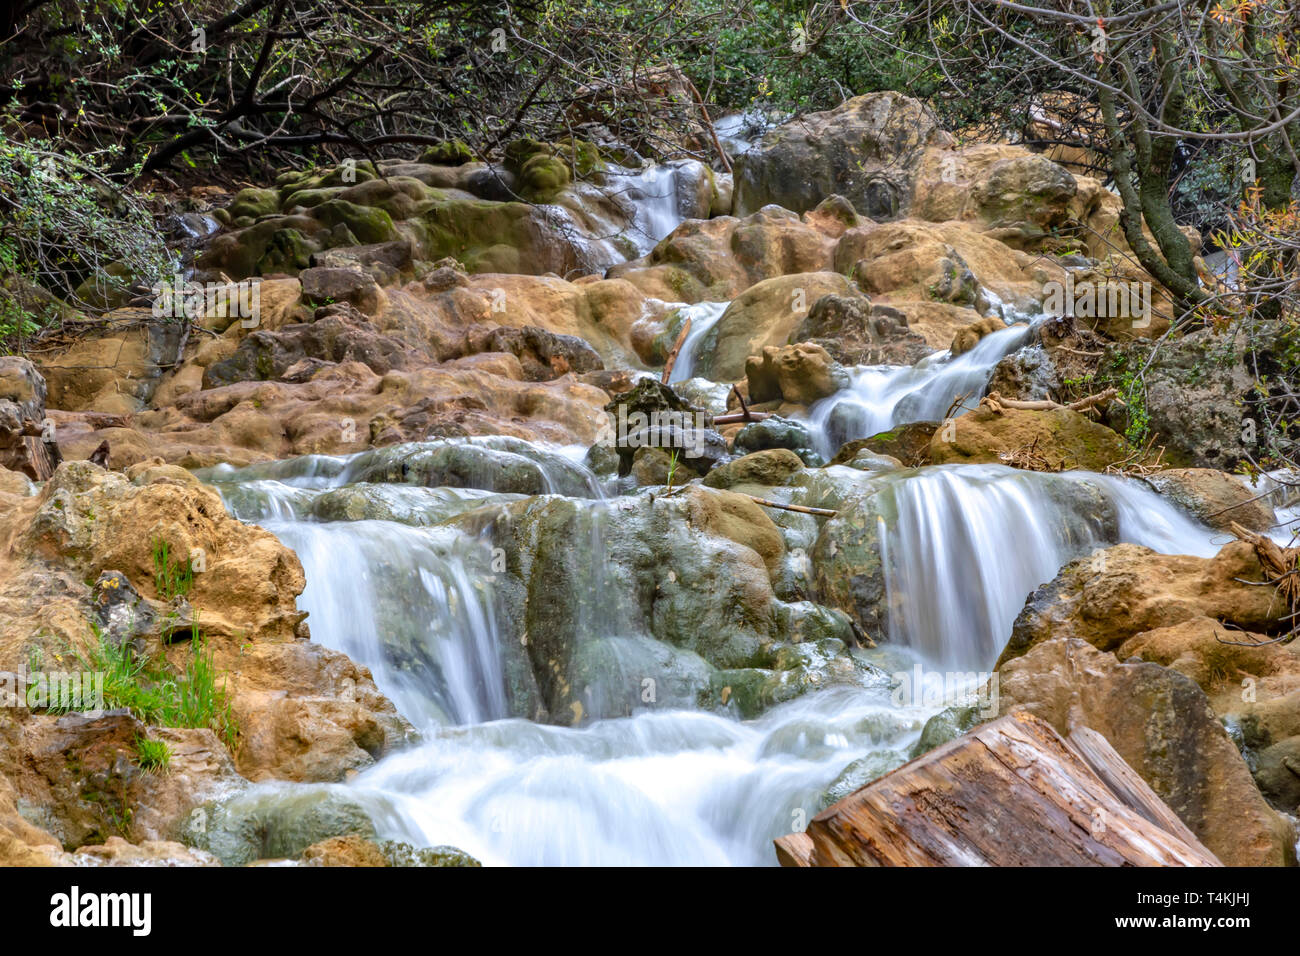 Les petites cascades de chutes sur un ruisseau de montagne au printemps. Parod River. Israël. Paysage Banque D'Images